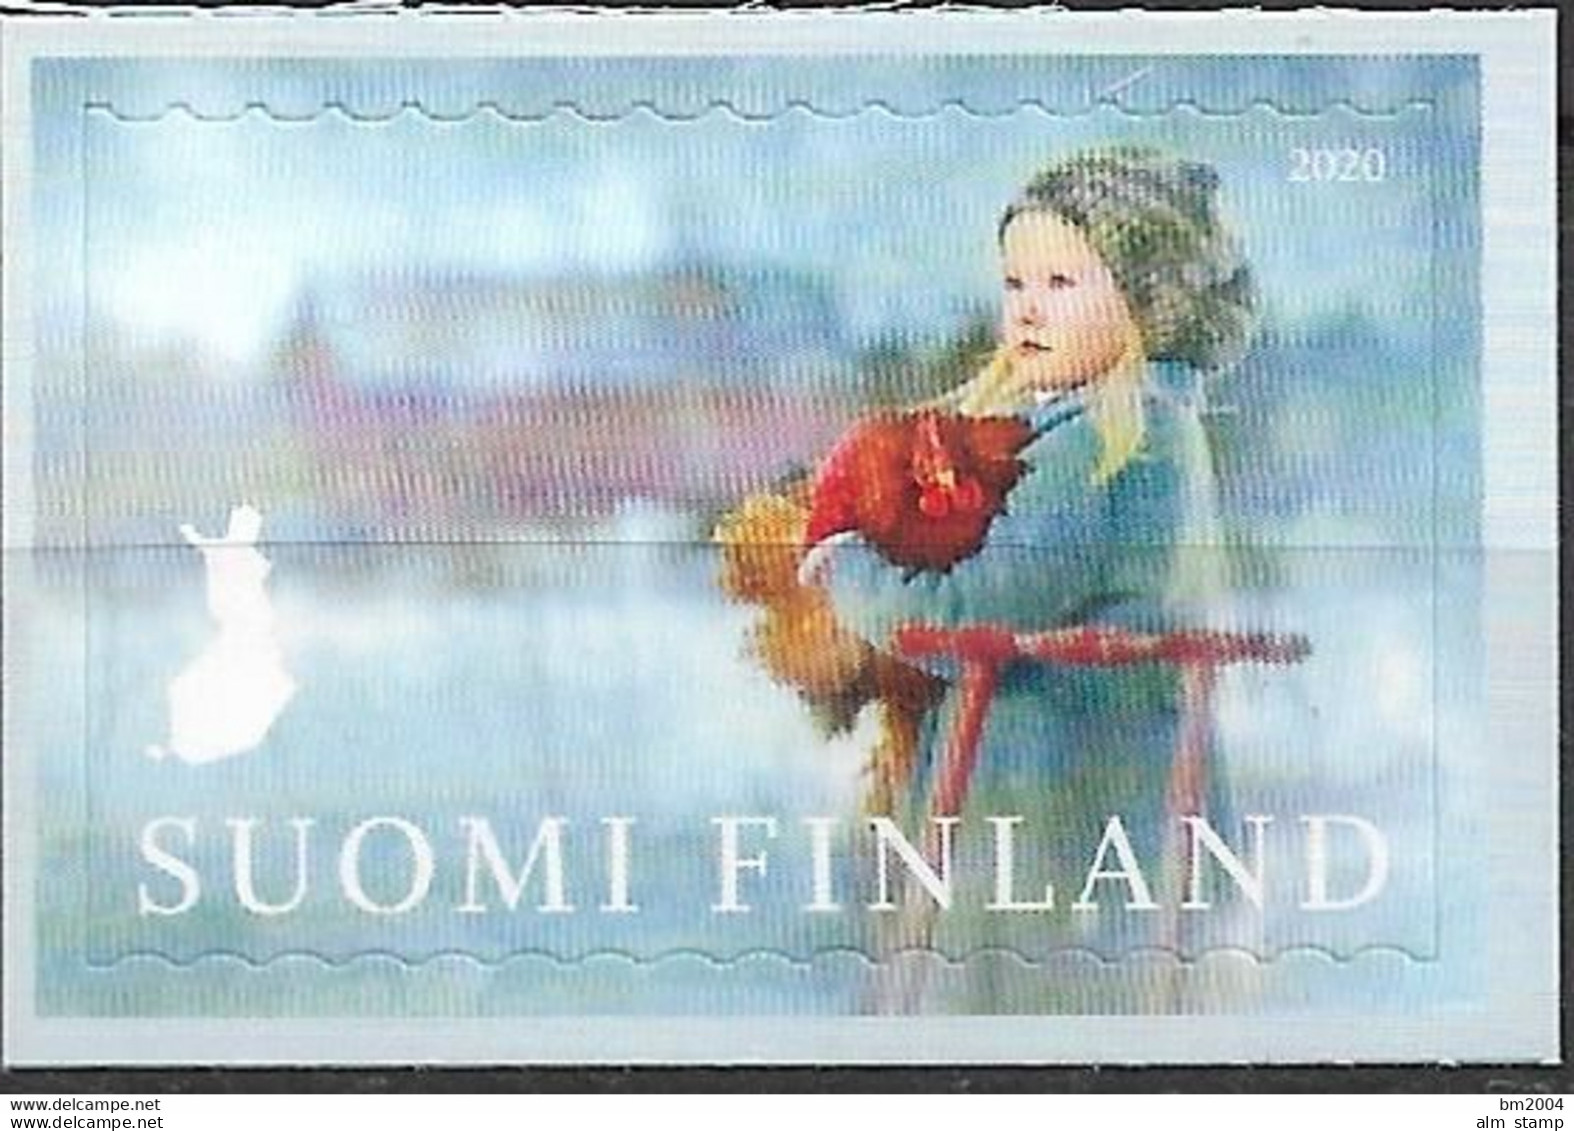 2020 Finnland Mi. 2729**MNH   Winterliche Grüße Aus Finnland. - Unused Stamps